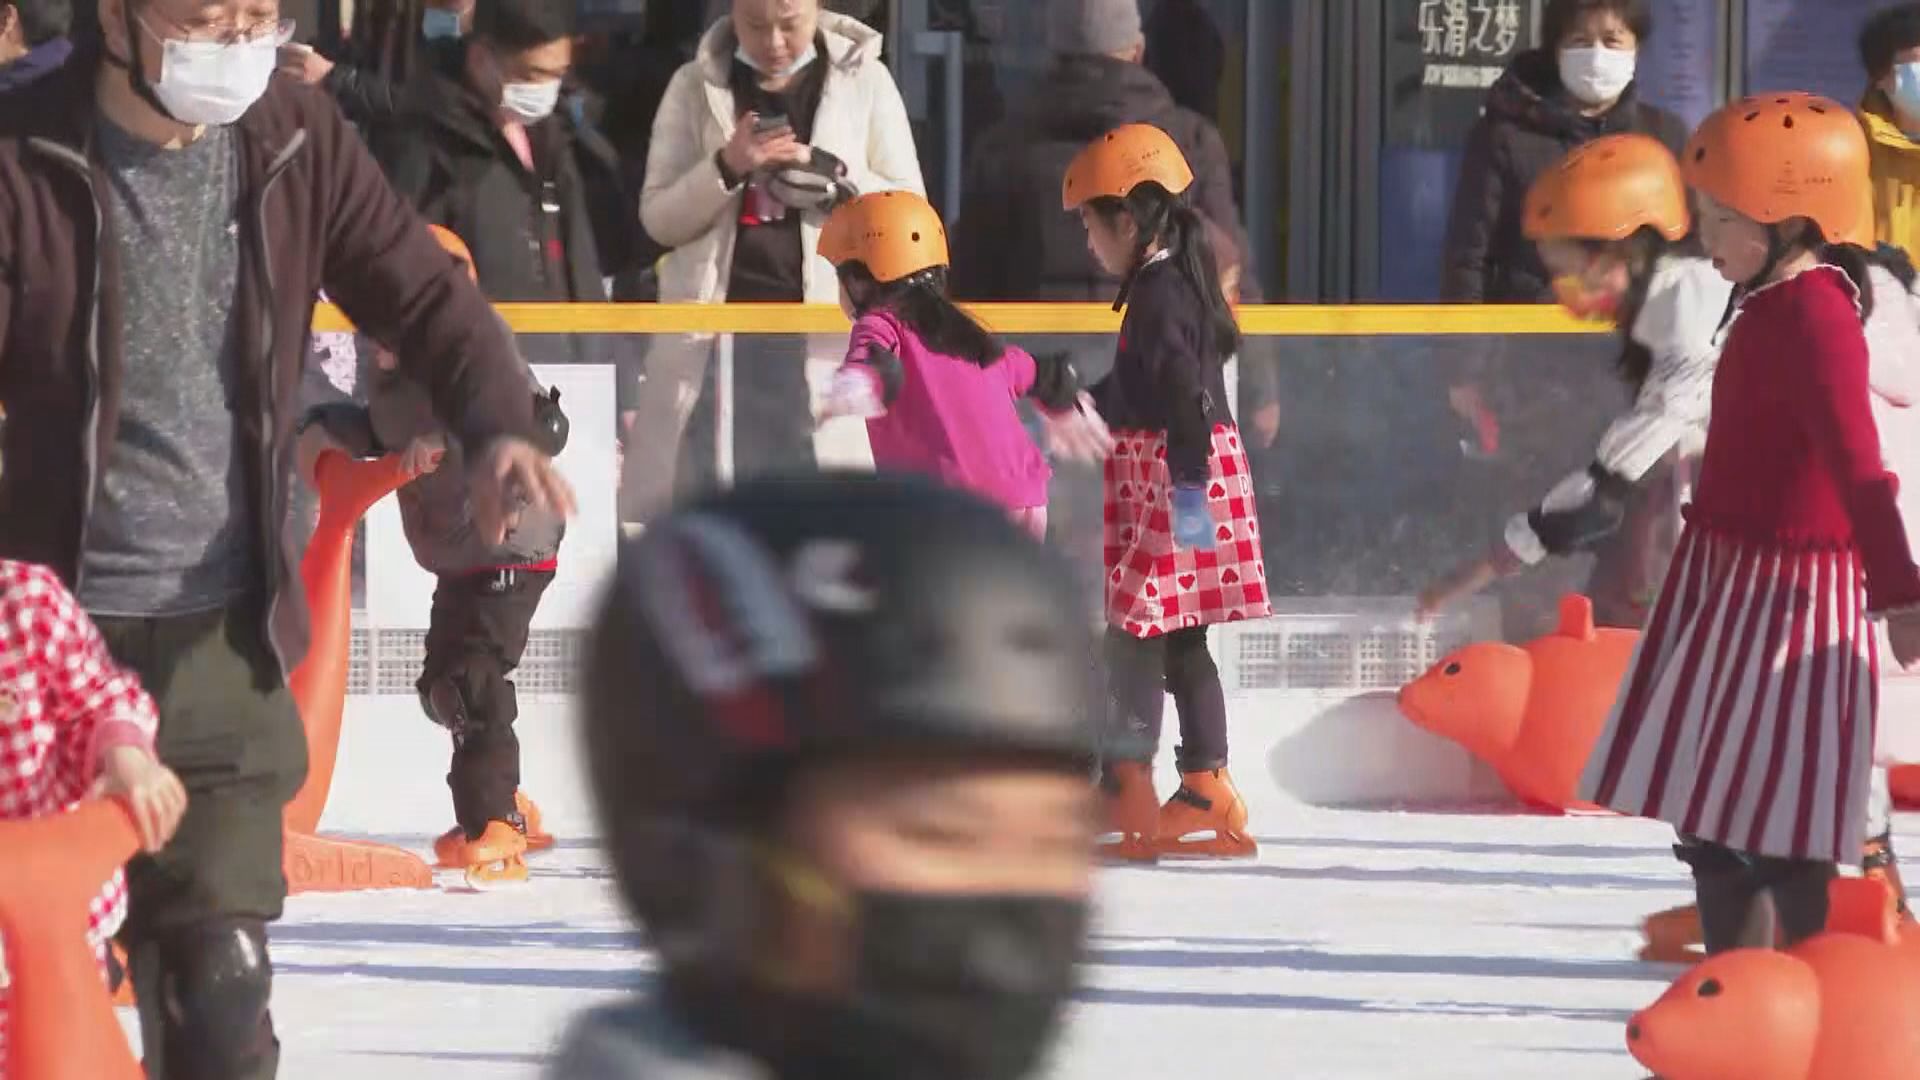 【首都專線】冬奧熱潮帶動滑冰場增3成生意